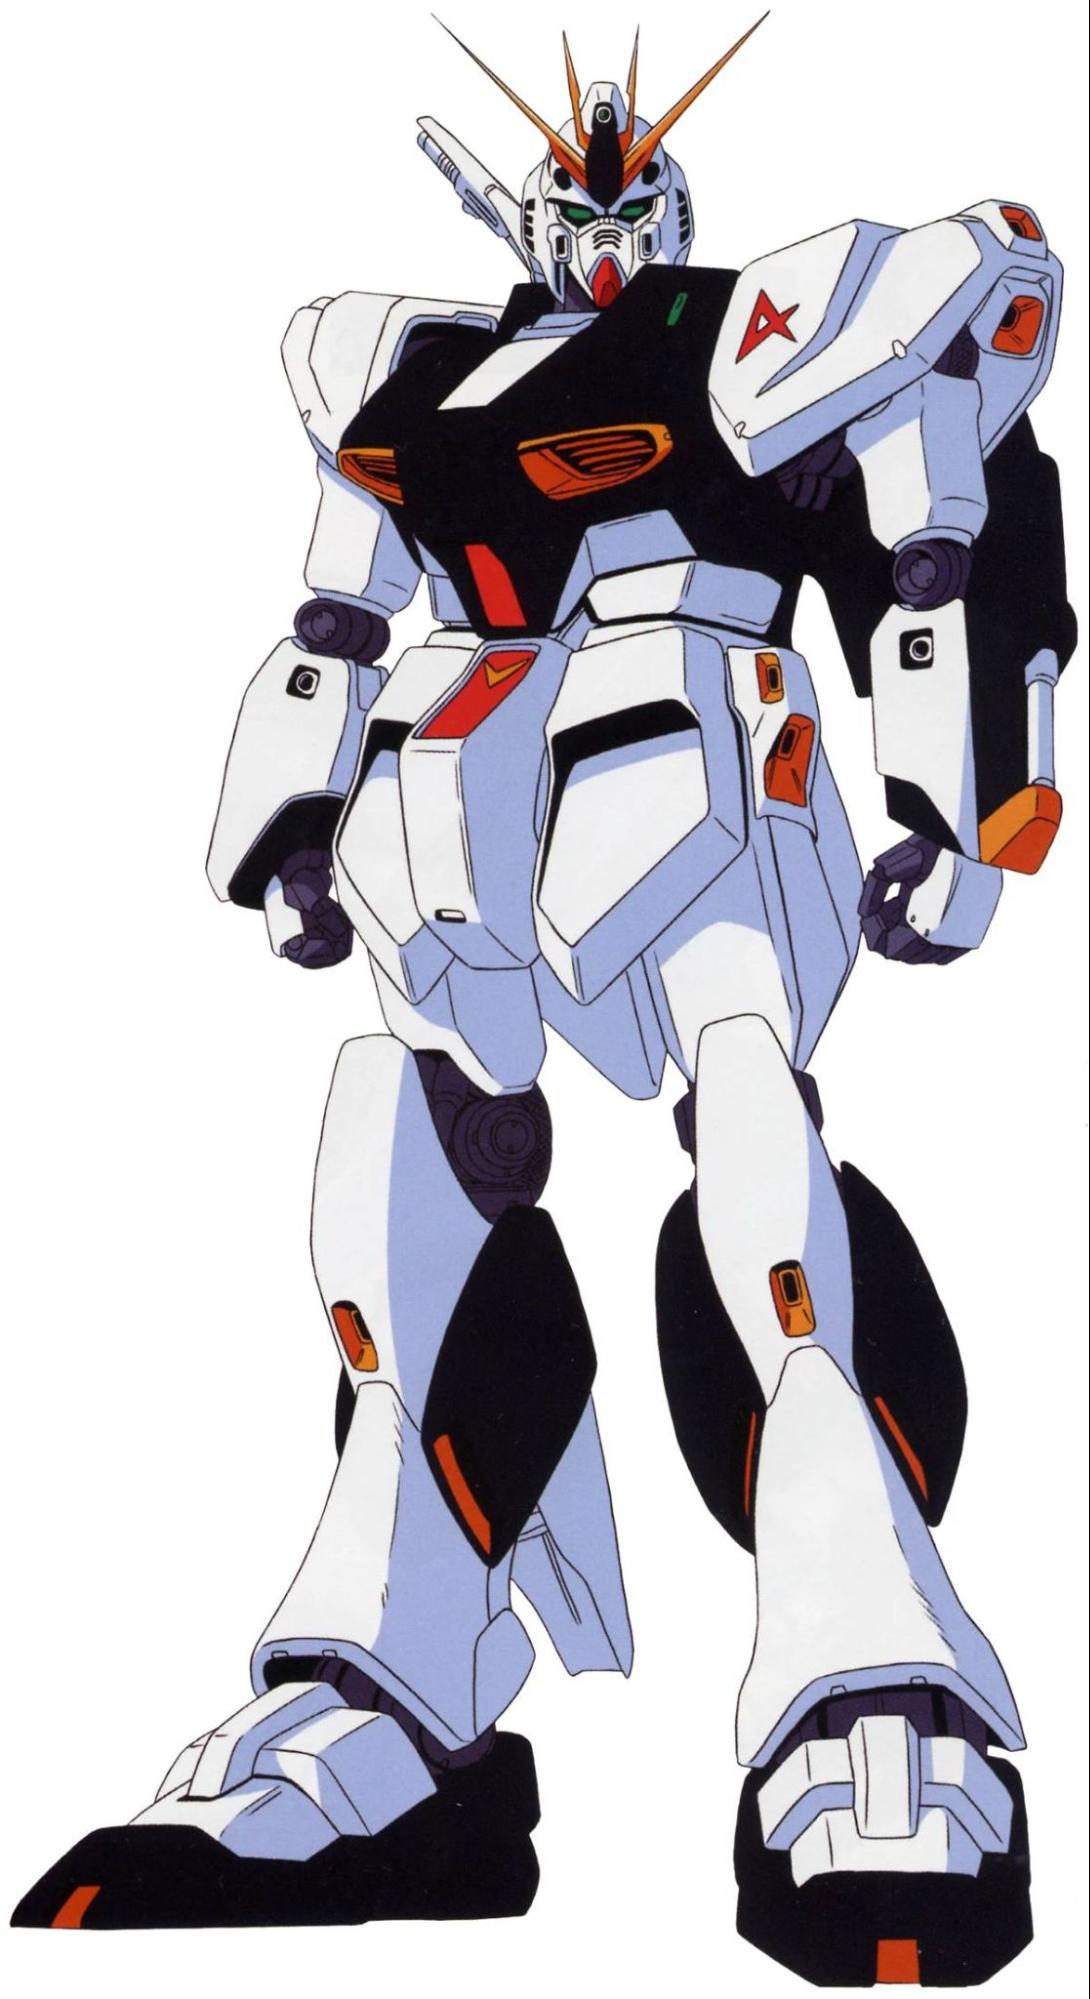 Nu Gundam - Harmonious Fusion of Power and Grace